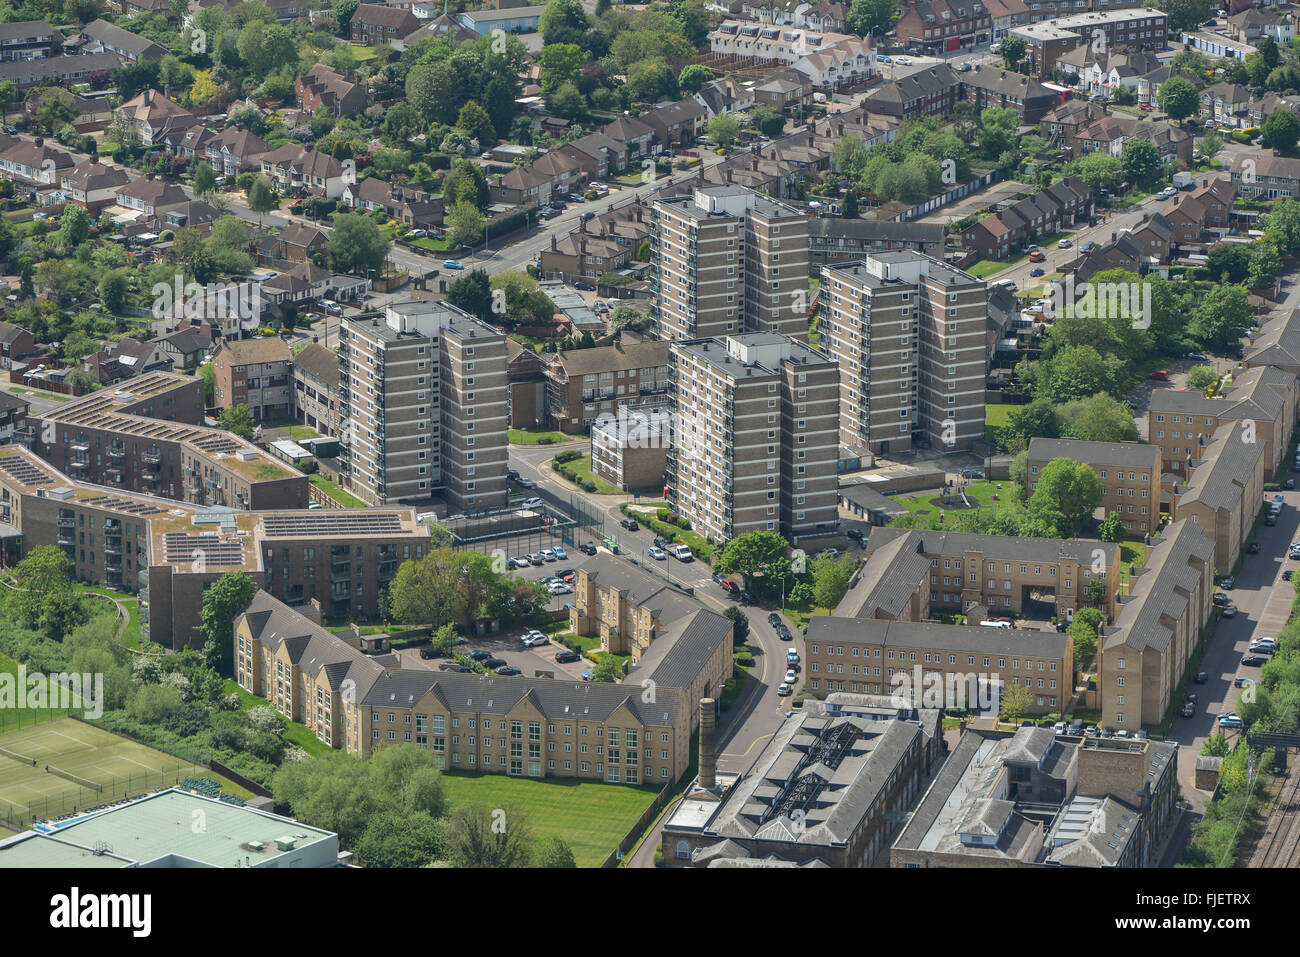 Eine Luftaufnahme des Gebiets Gidea Park Romford, Havering, Greater London Stockfoto